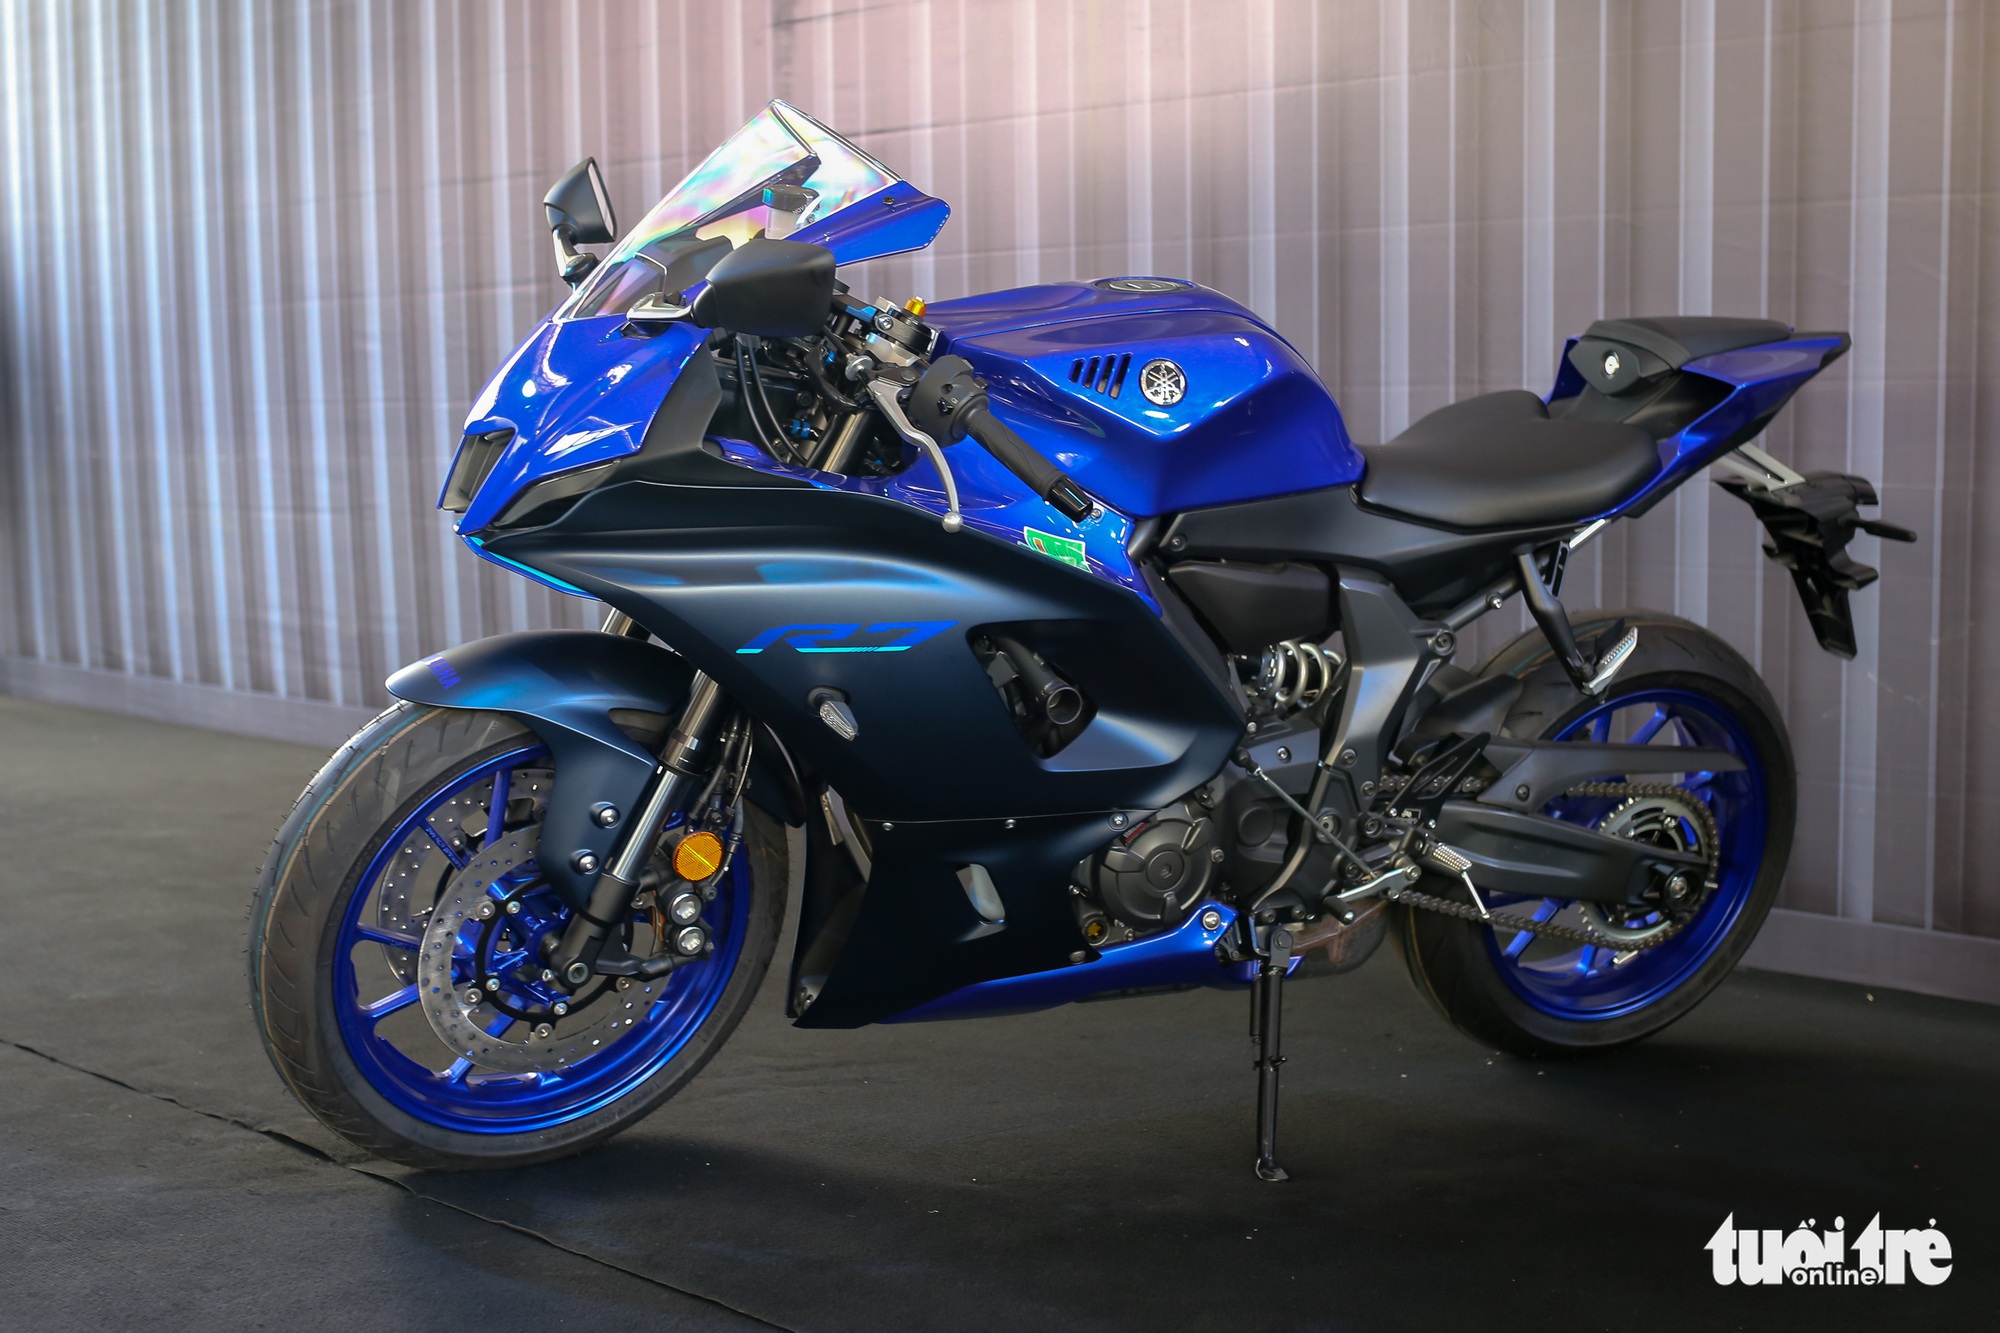 Yamaha YZF-R7 - Sportbike tầm trung giá 269 triệu đồng, thay thế 'huyền thoại' R6 - Ảnh 12.